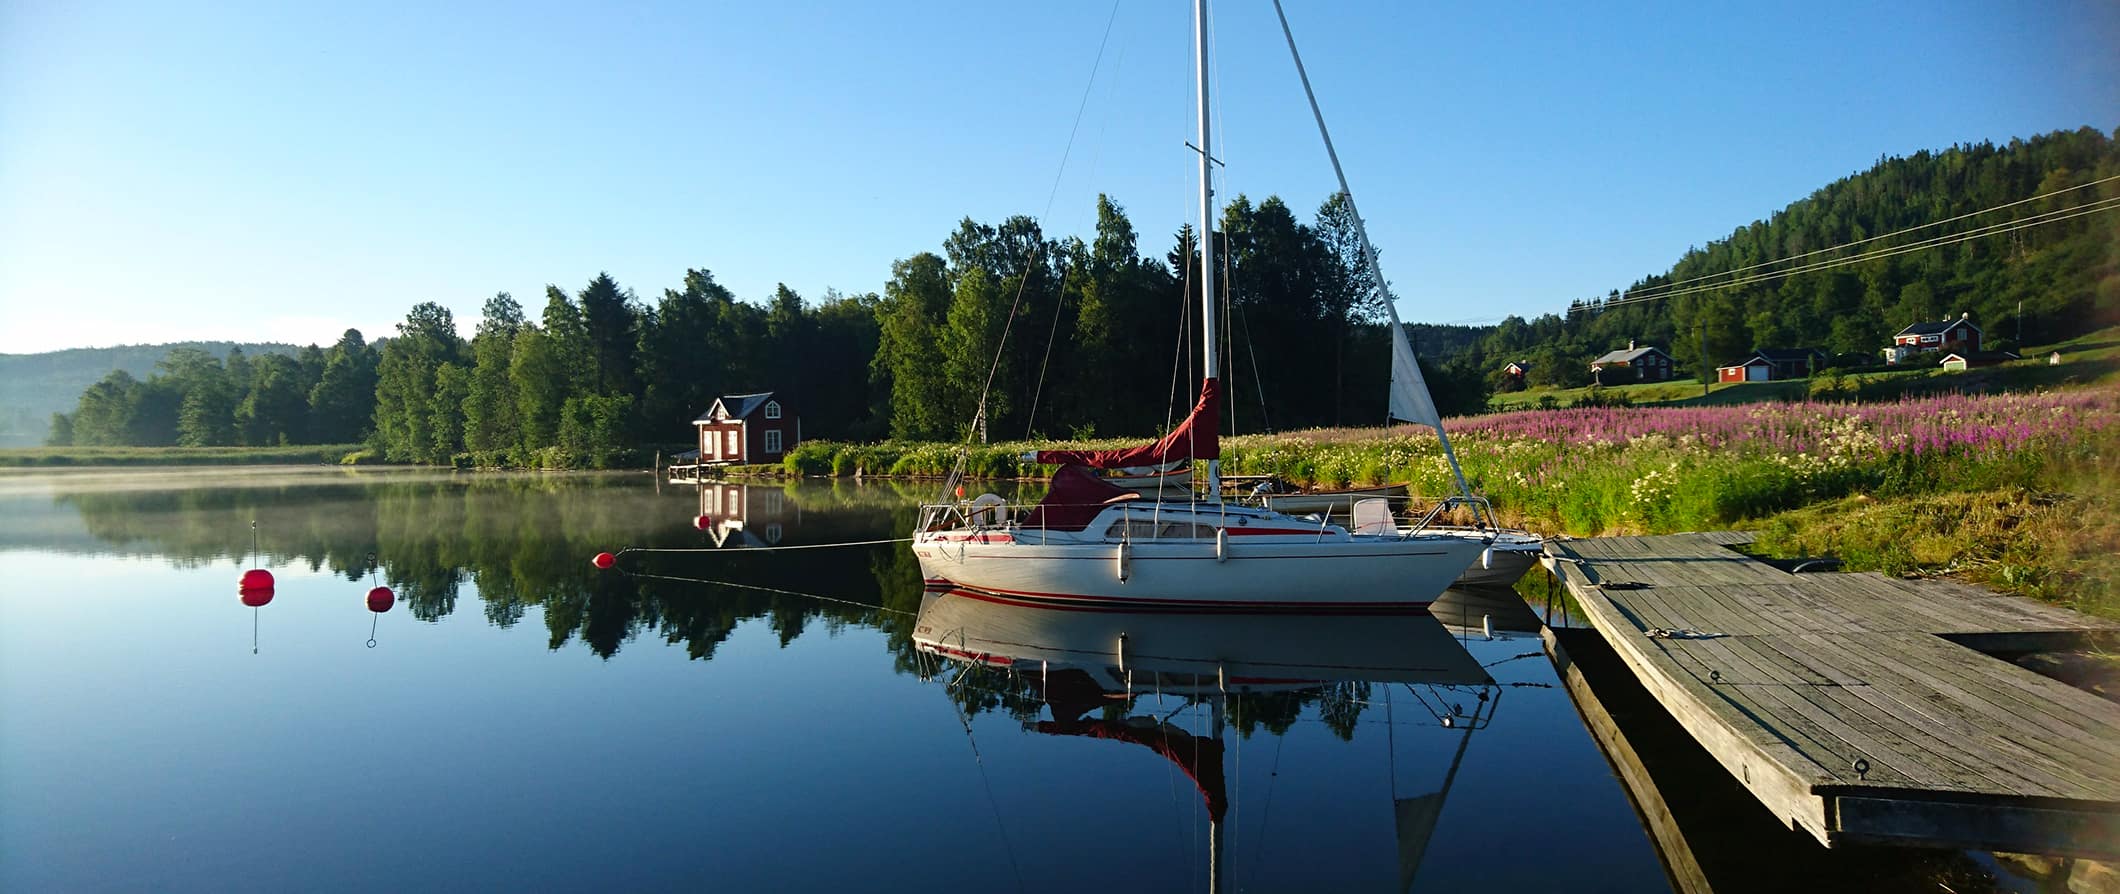 瑞典宁静的湖畔景色